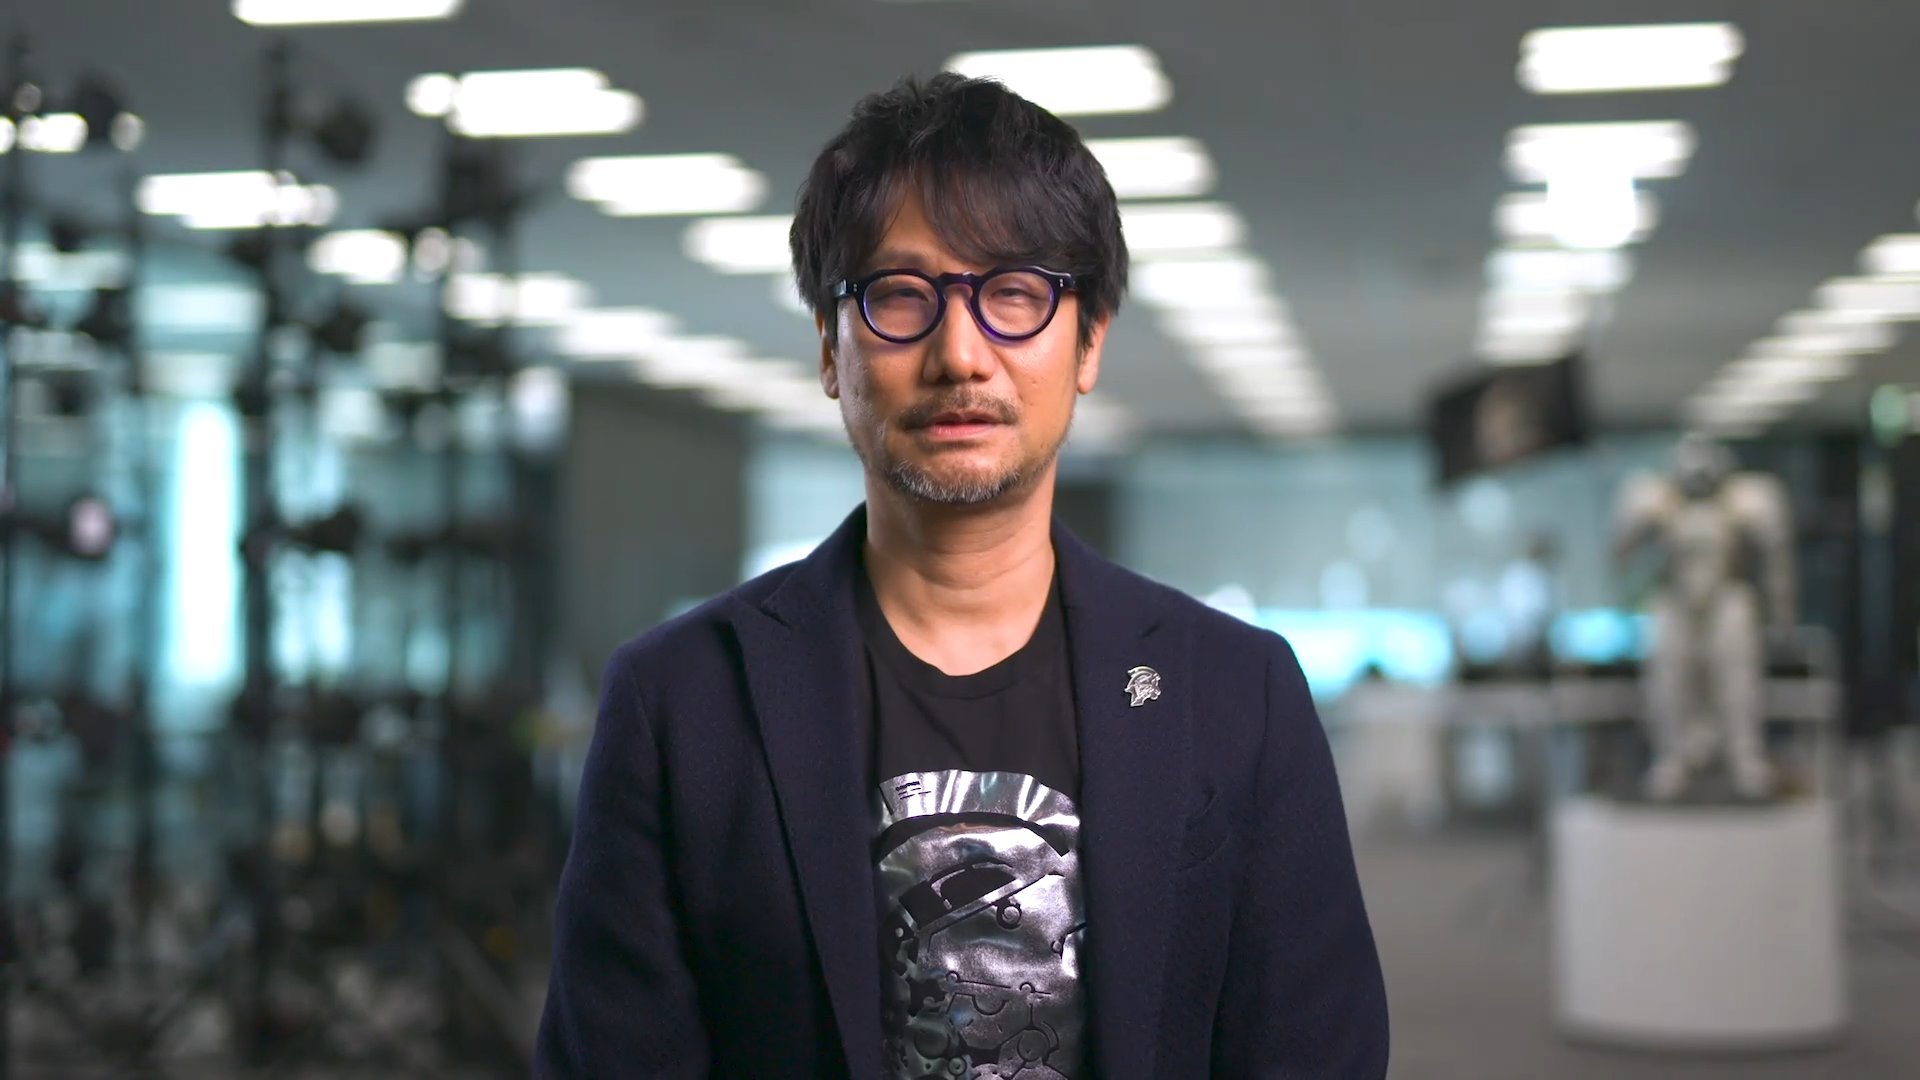 Hideo Kojima confirma que está trabajando en un nuevo juego junto a Microsoft